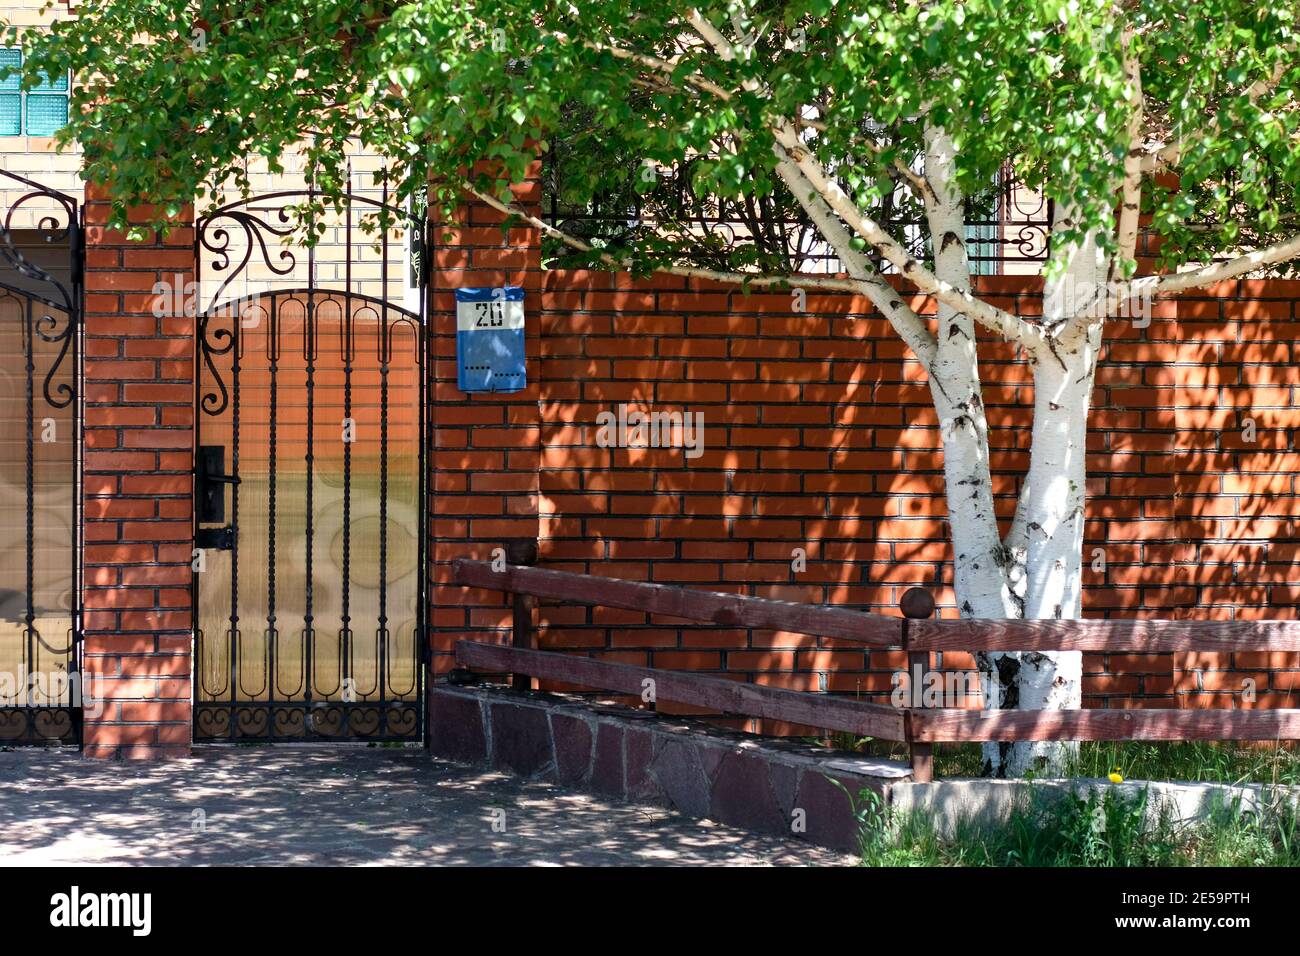 Das Tor zum Haus besteht aus rotem Backstein. Eine blaue Mailbox mit der Nummer 20 ist sichtbar. Birke wächst in der Nähe, Frühling Stockfoto